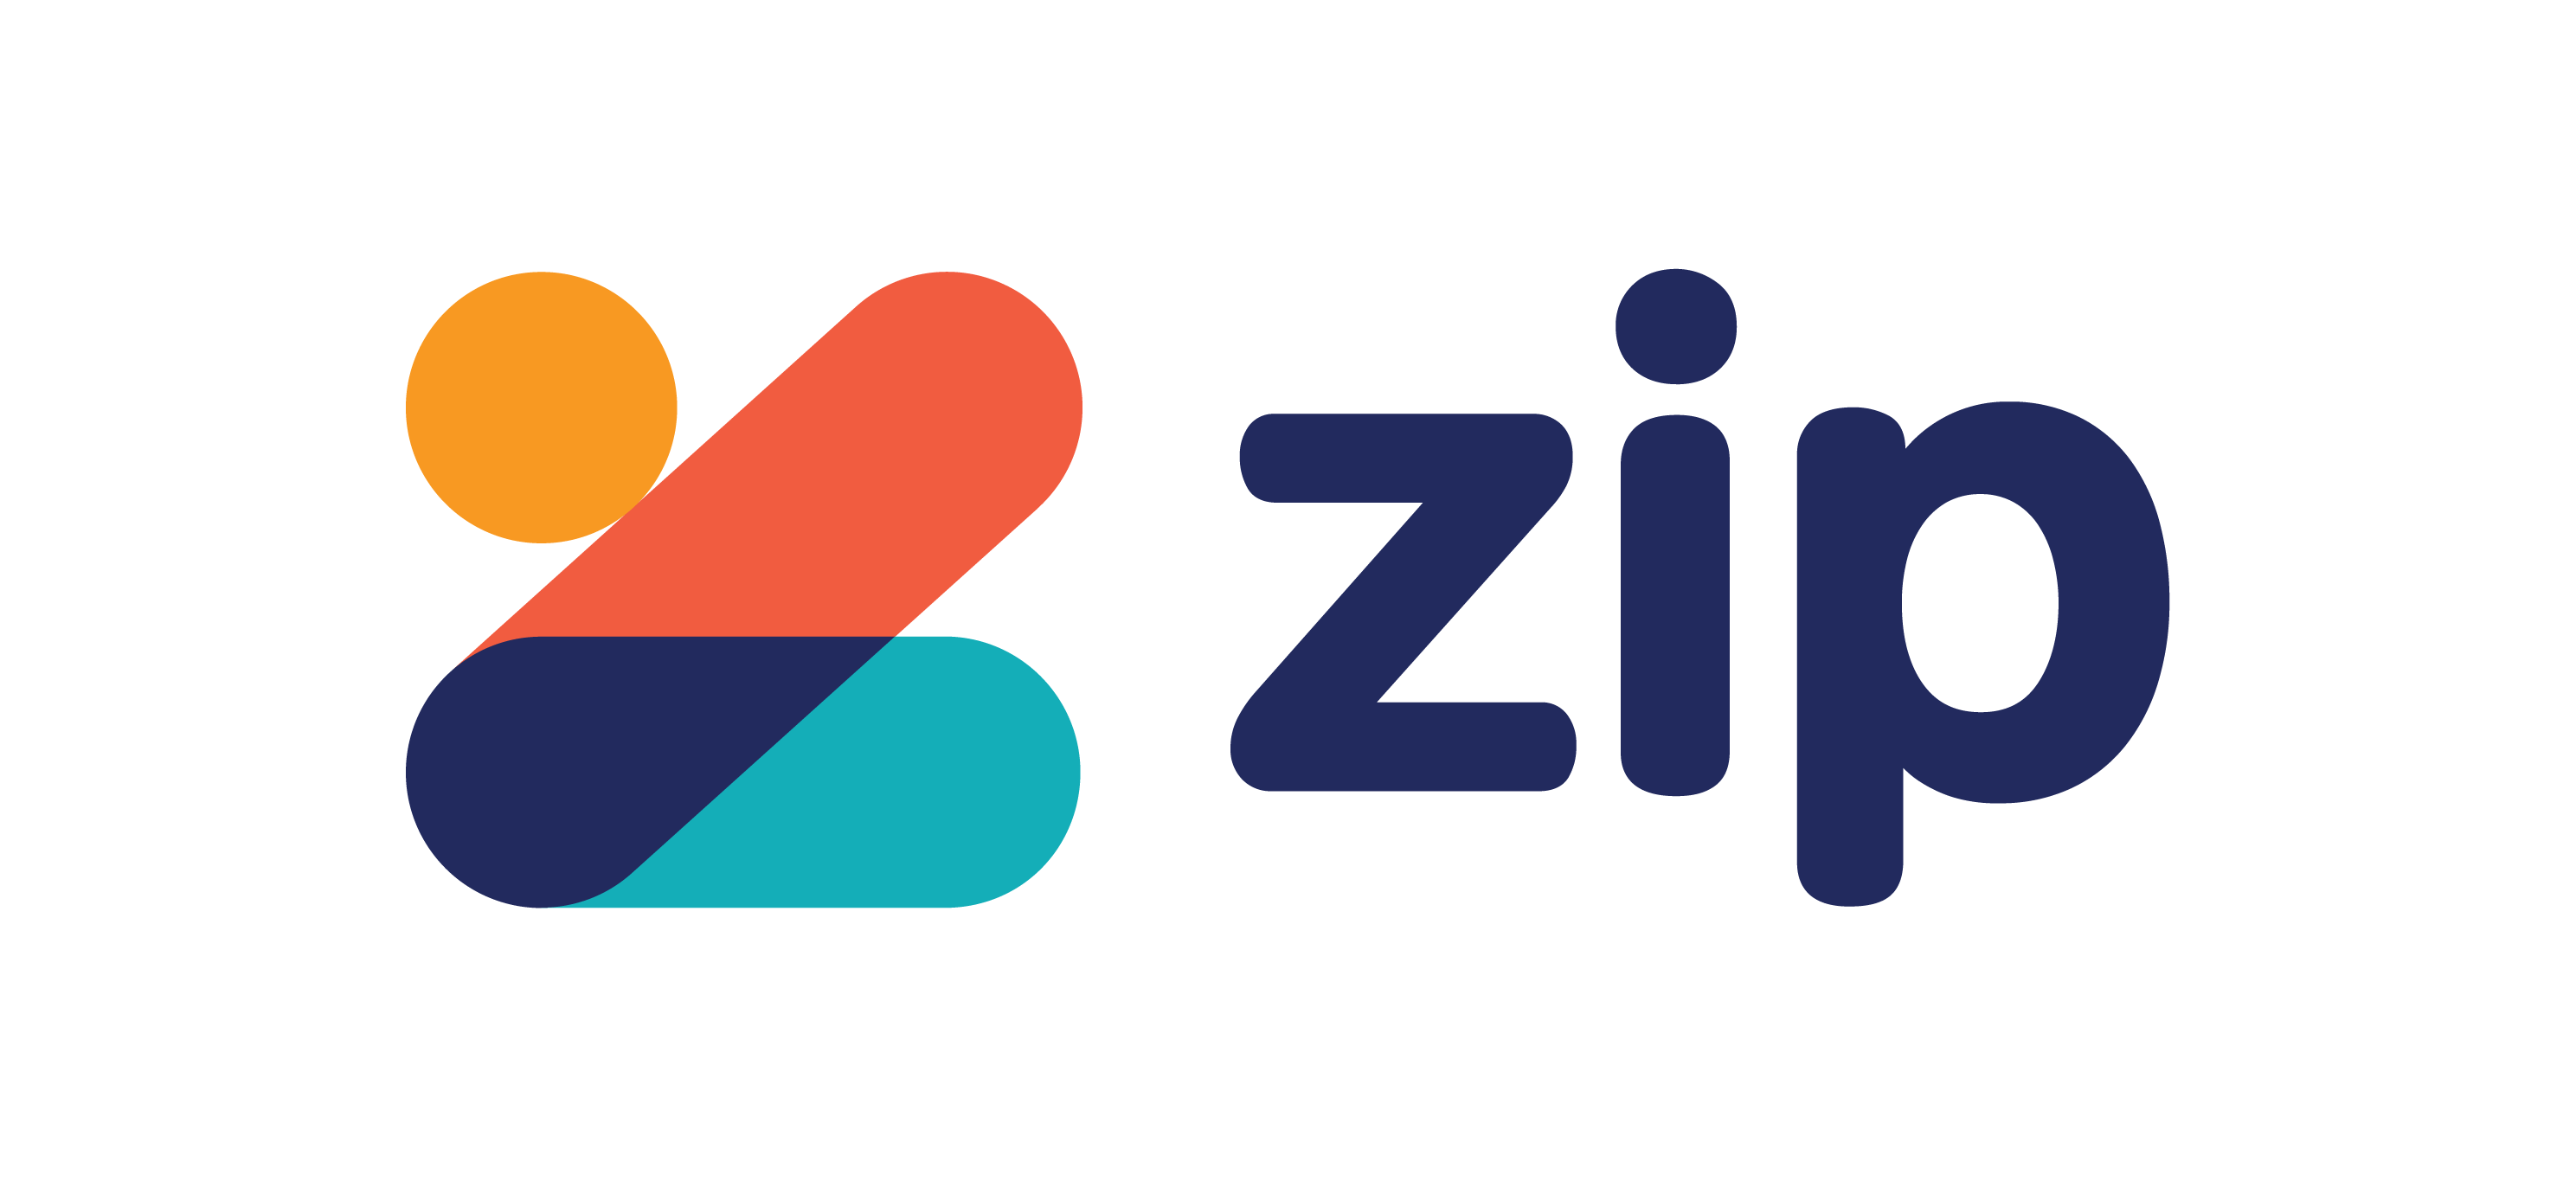 The Zippay payment platform logo